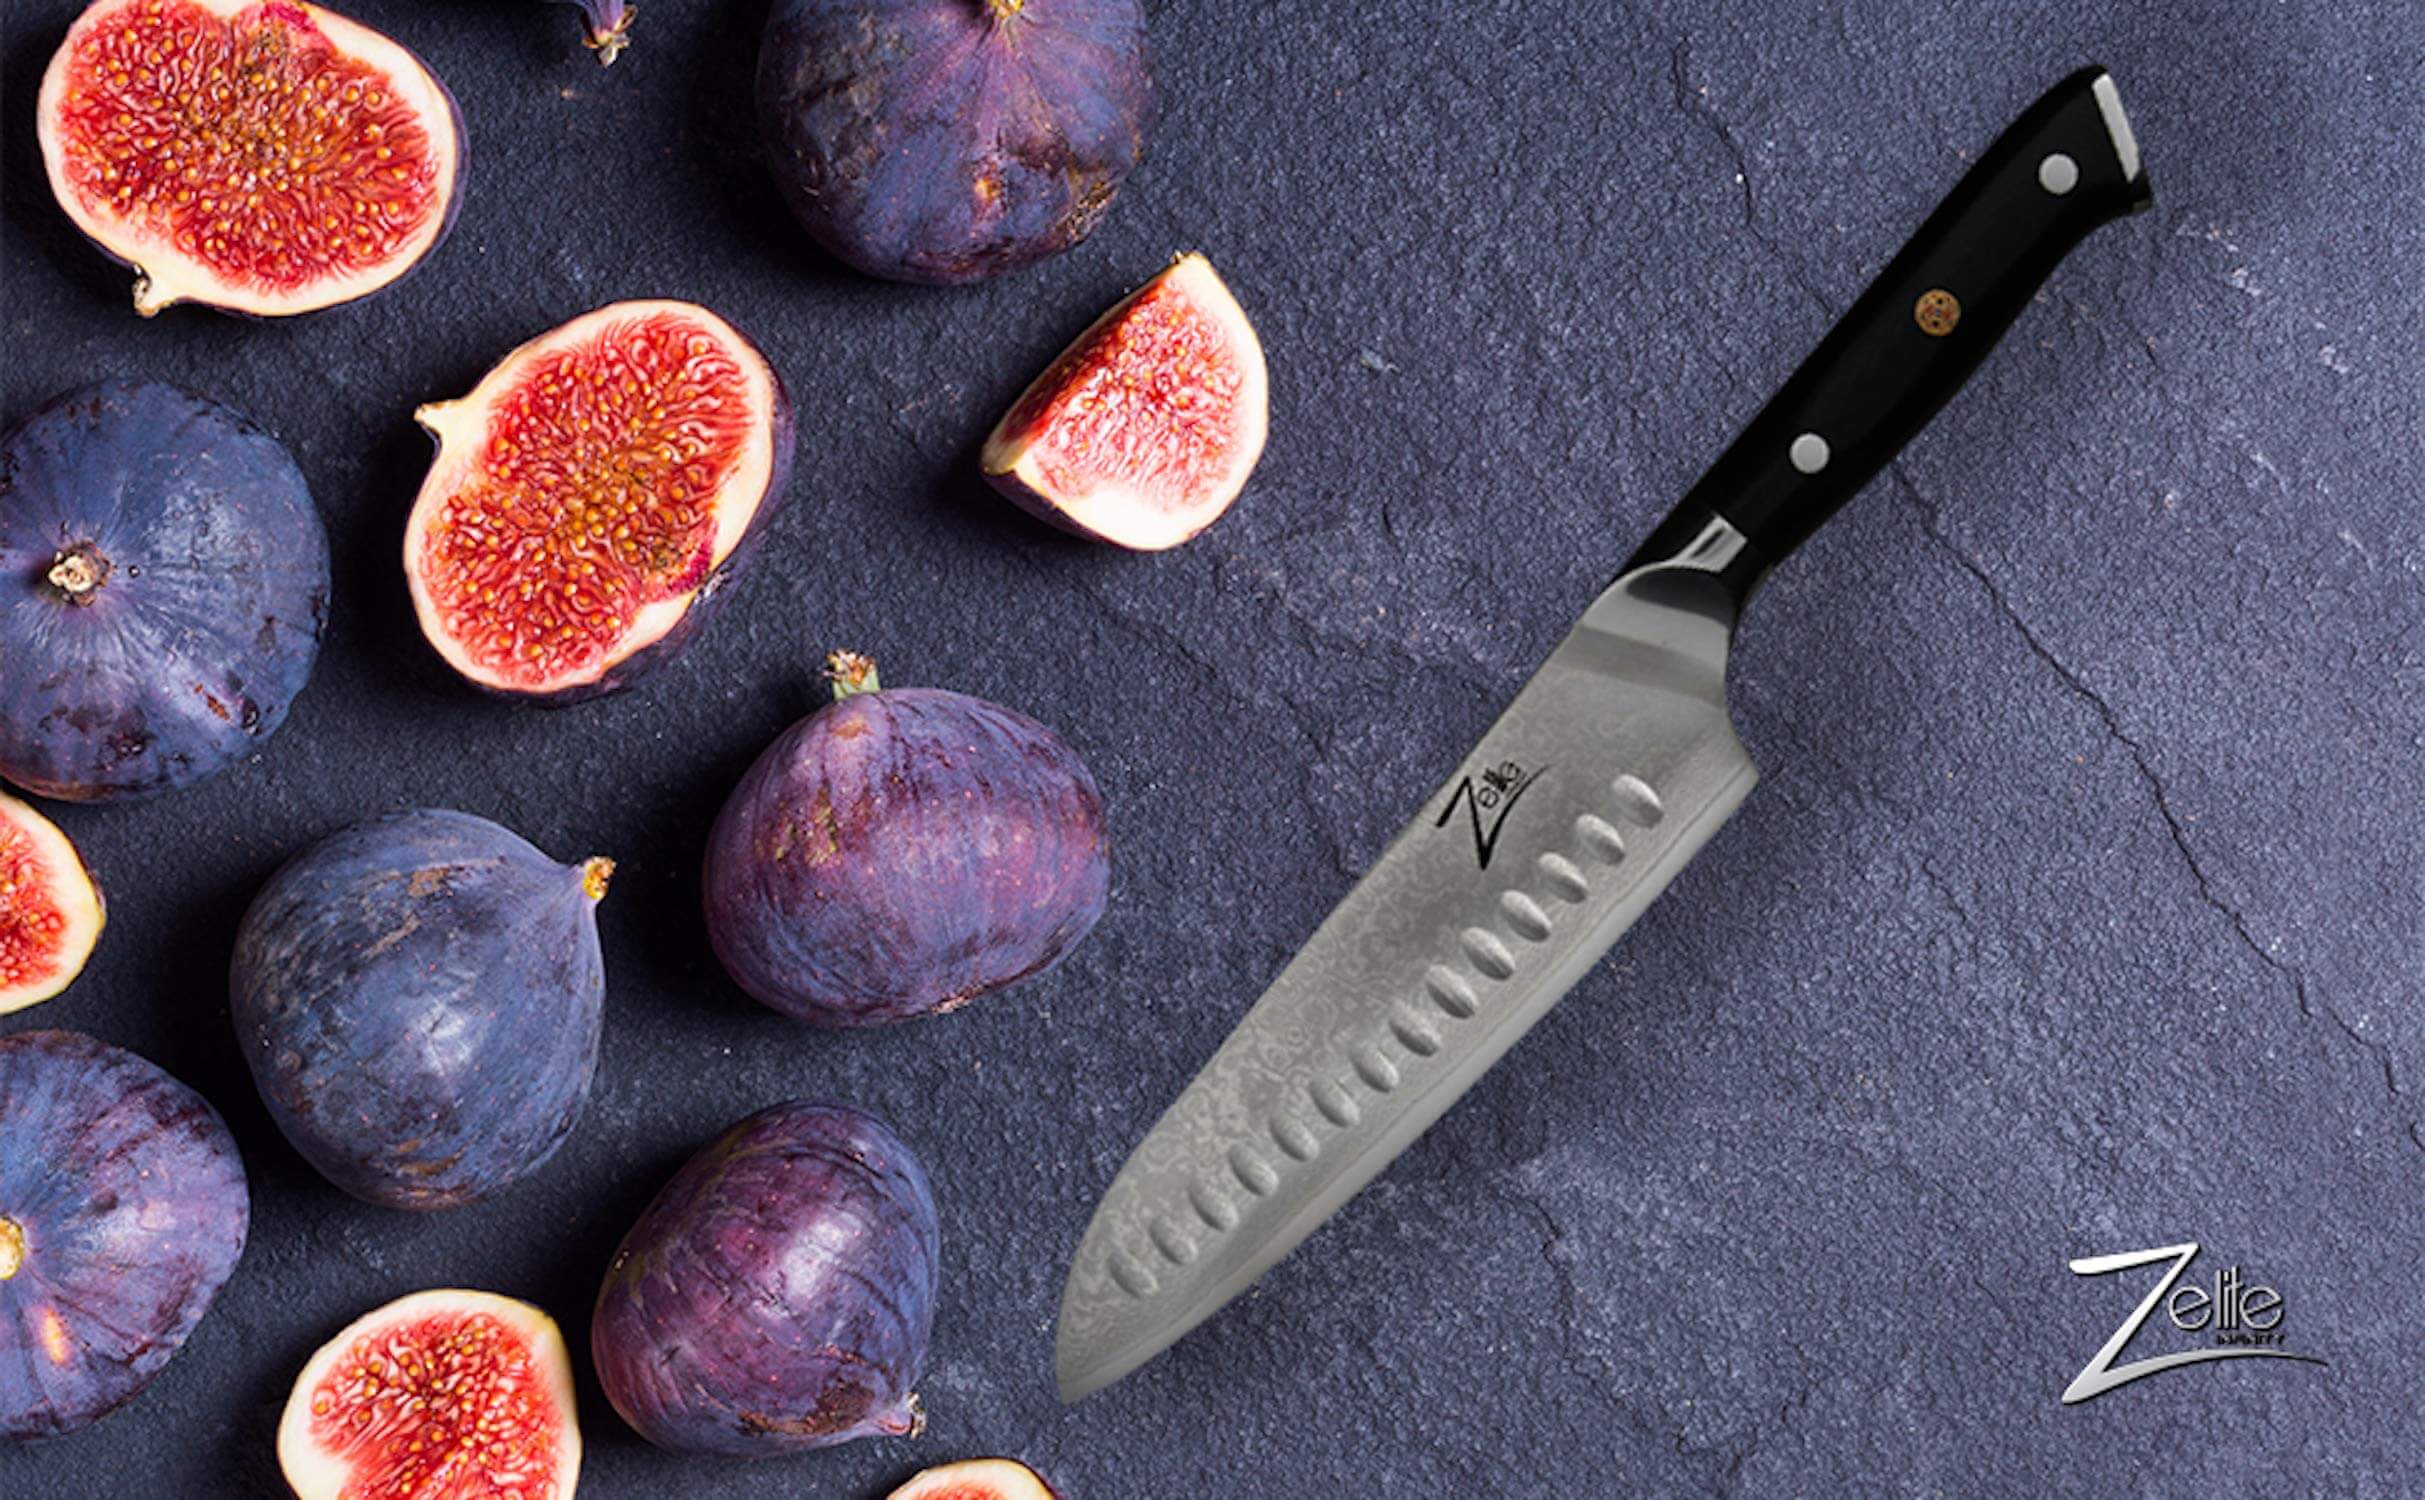 Zelite Infinity Santoku Knife 7 Inch, best japanese knives, kitchen knives best on the market